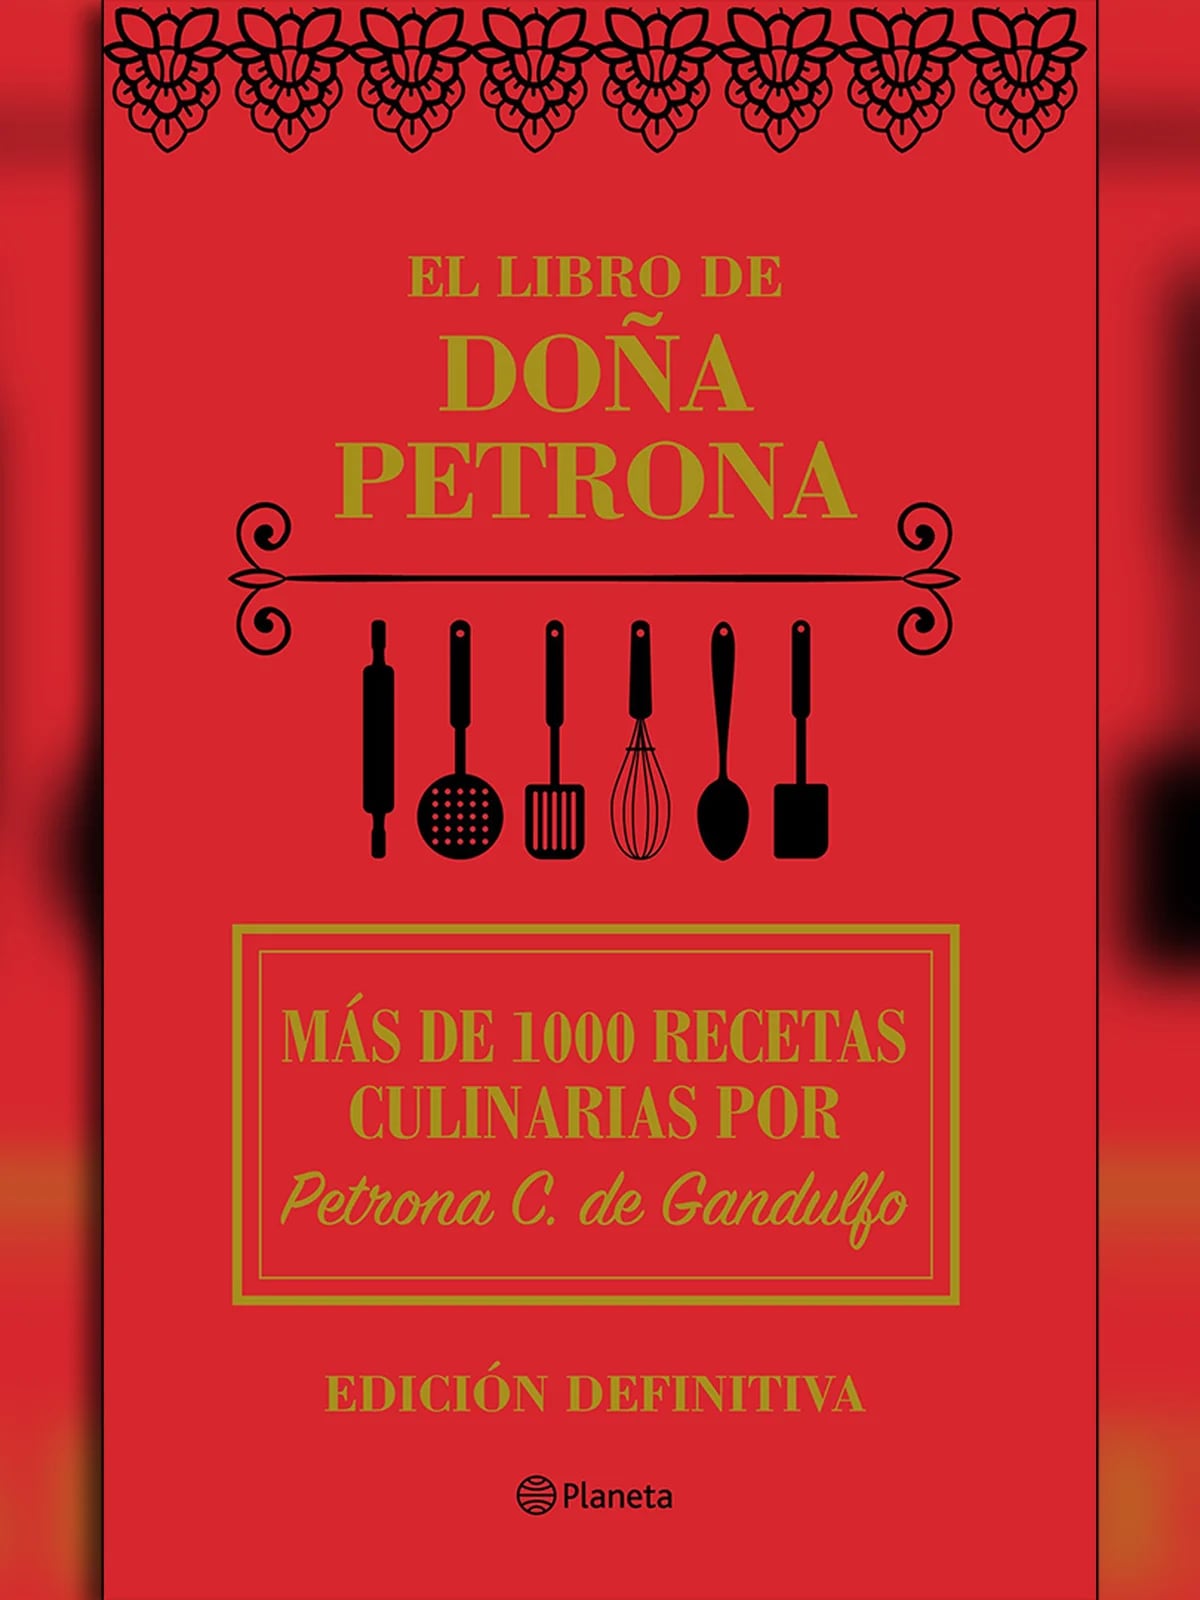 Libro Cocina Argentina Tapa Dura - Edición Local